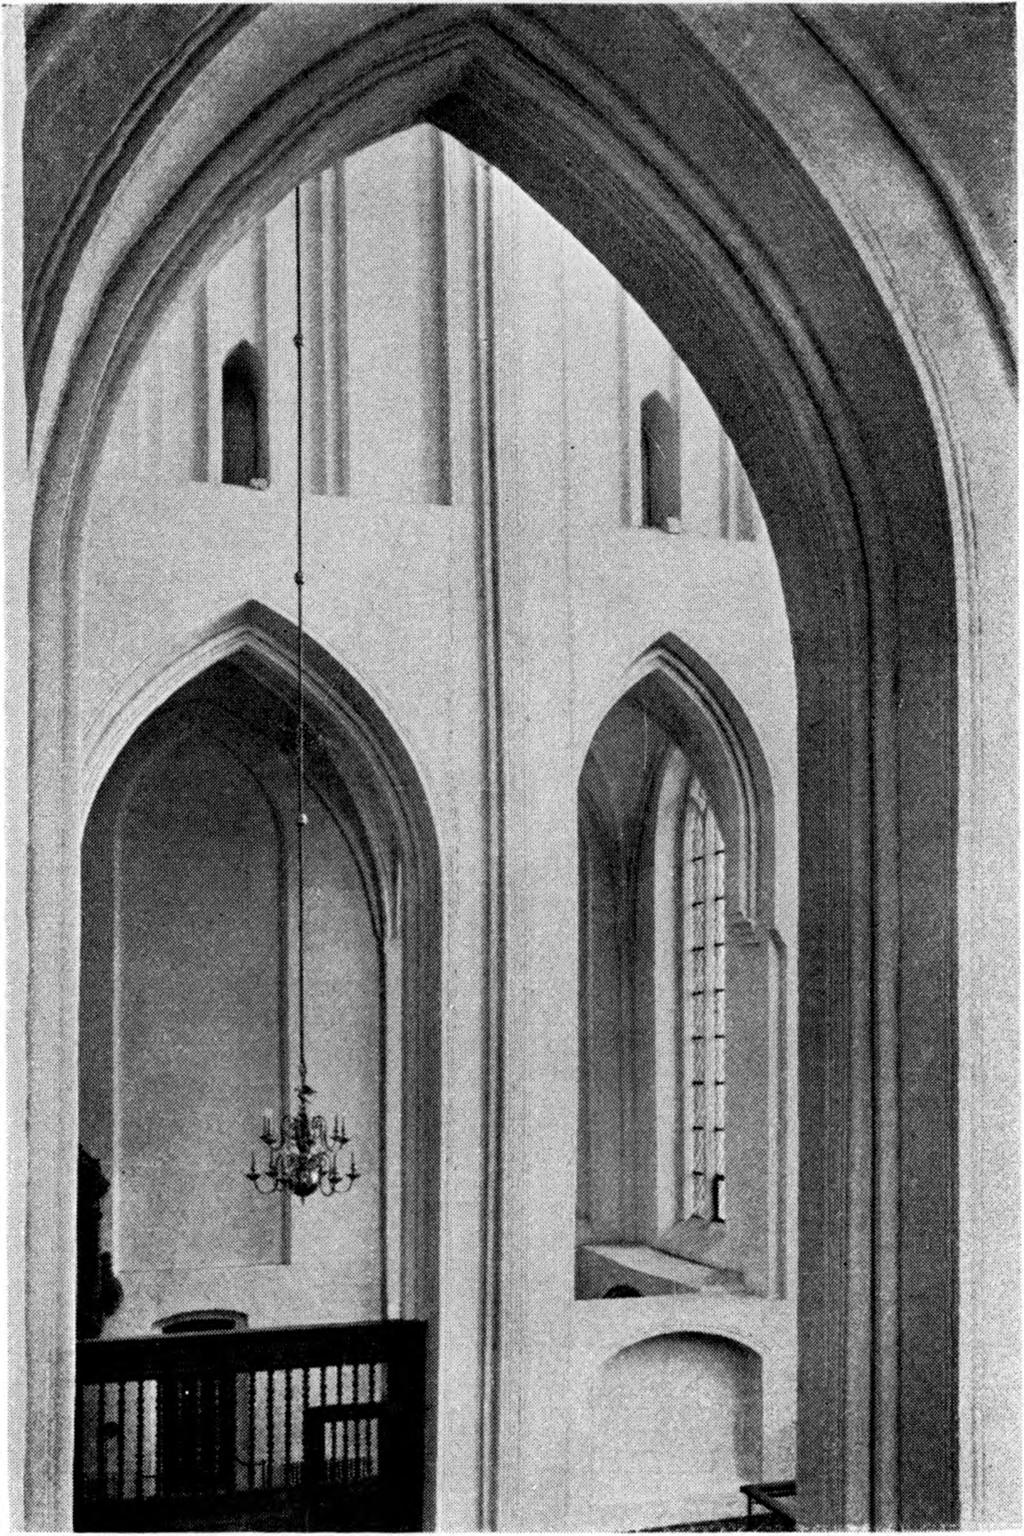 BYGNINGSHISTORIE 89 Fig. 32. Haderslev domkirke. Korets nordmur og nordre korsideskib, set fra sangerpulpituret (p. 89). L.